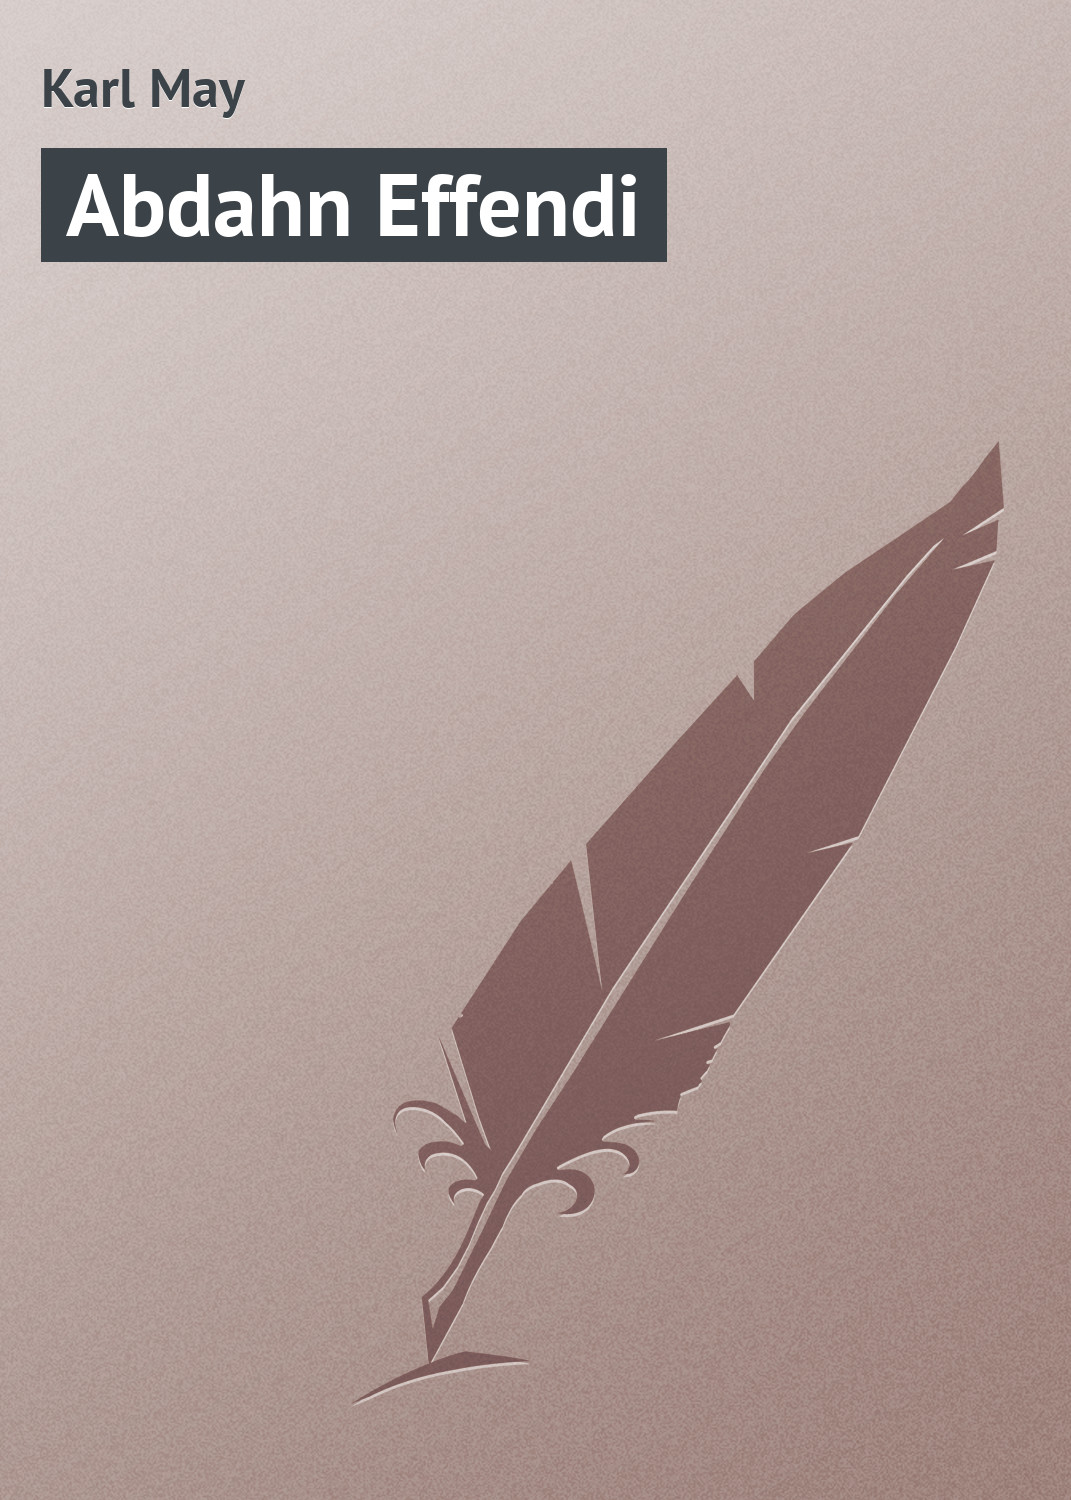 Книга Abdahn Effendi из серии , созданная Karl May, может относится к жанру Классическая проза. Стоимость электронной книги Abdahn Effendi с идентификатором 18405387 составляет 5.99 руб.